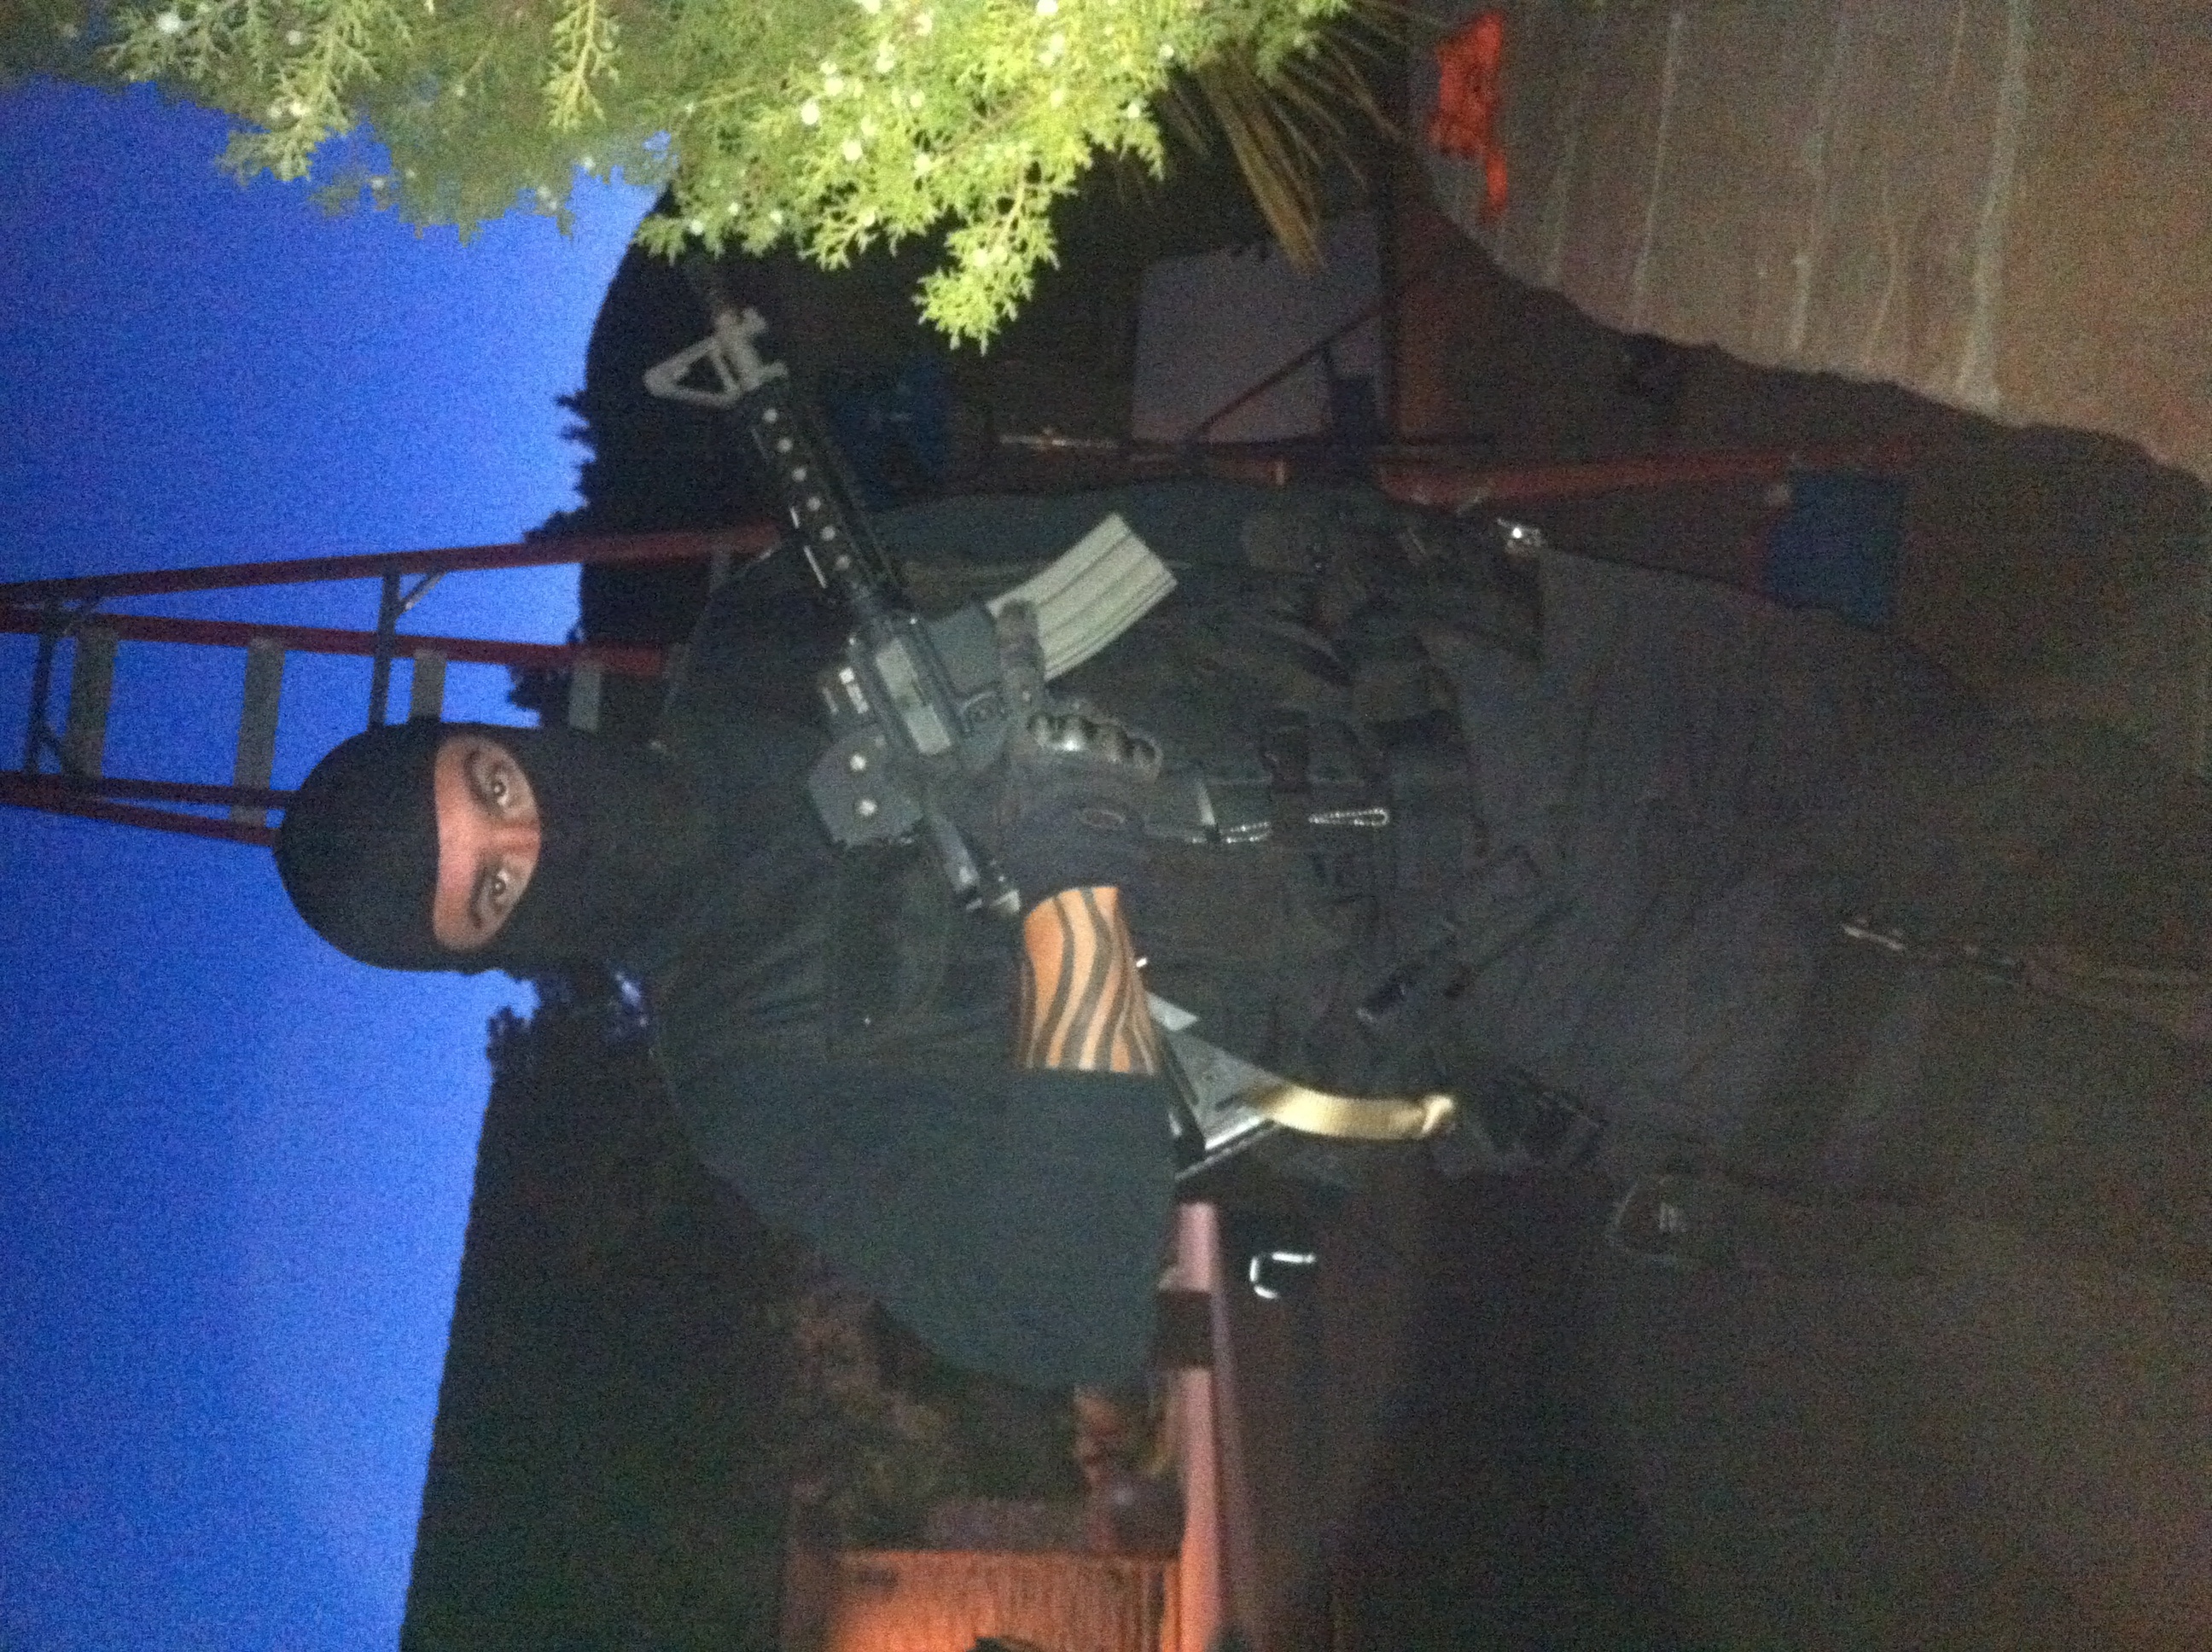 As Swat team member (Time Warrior)